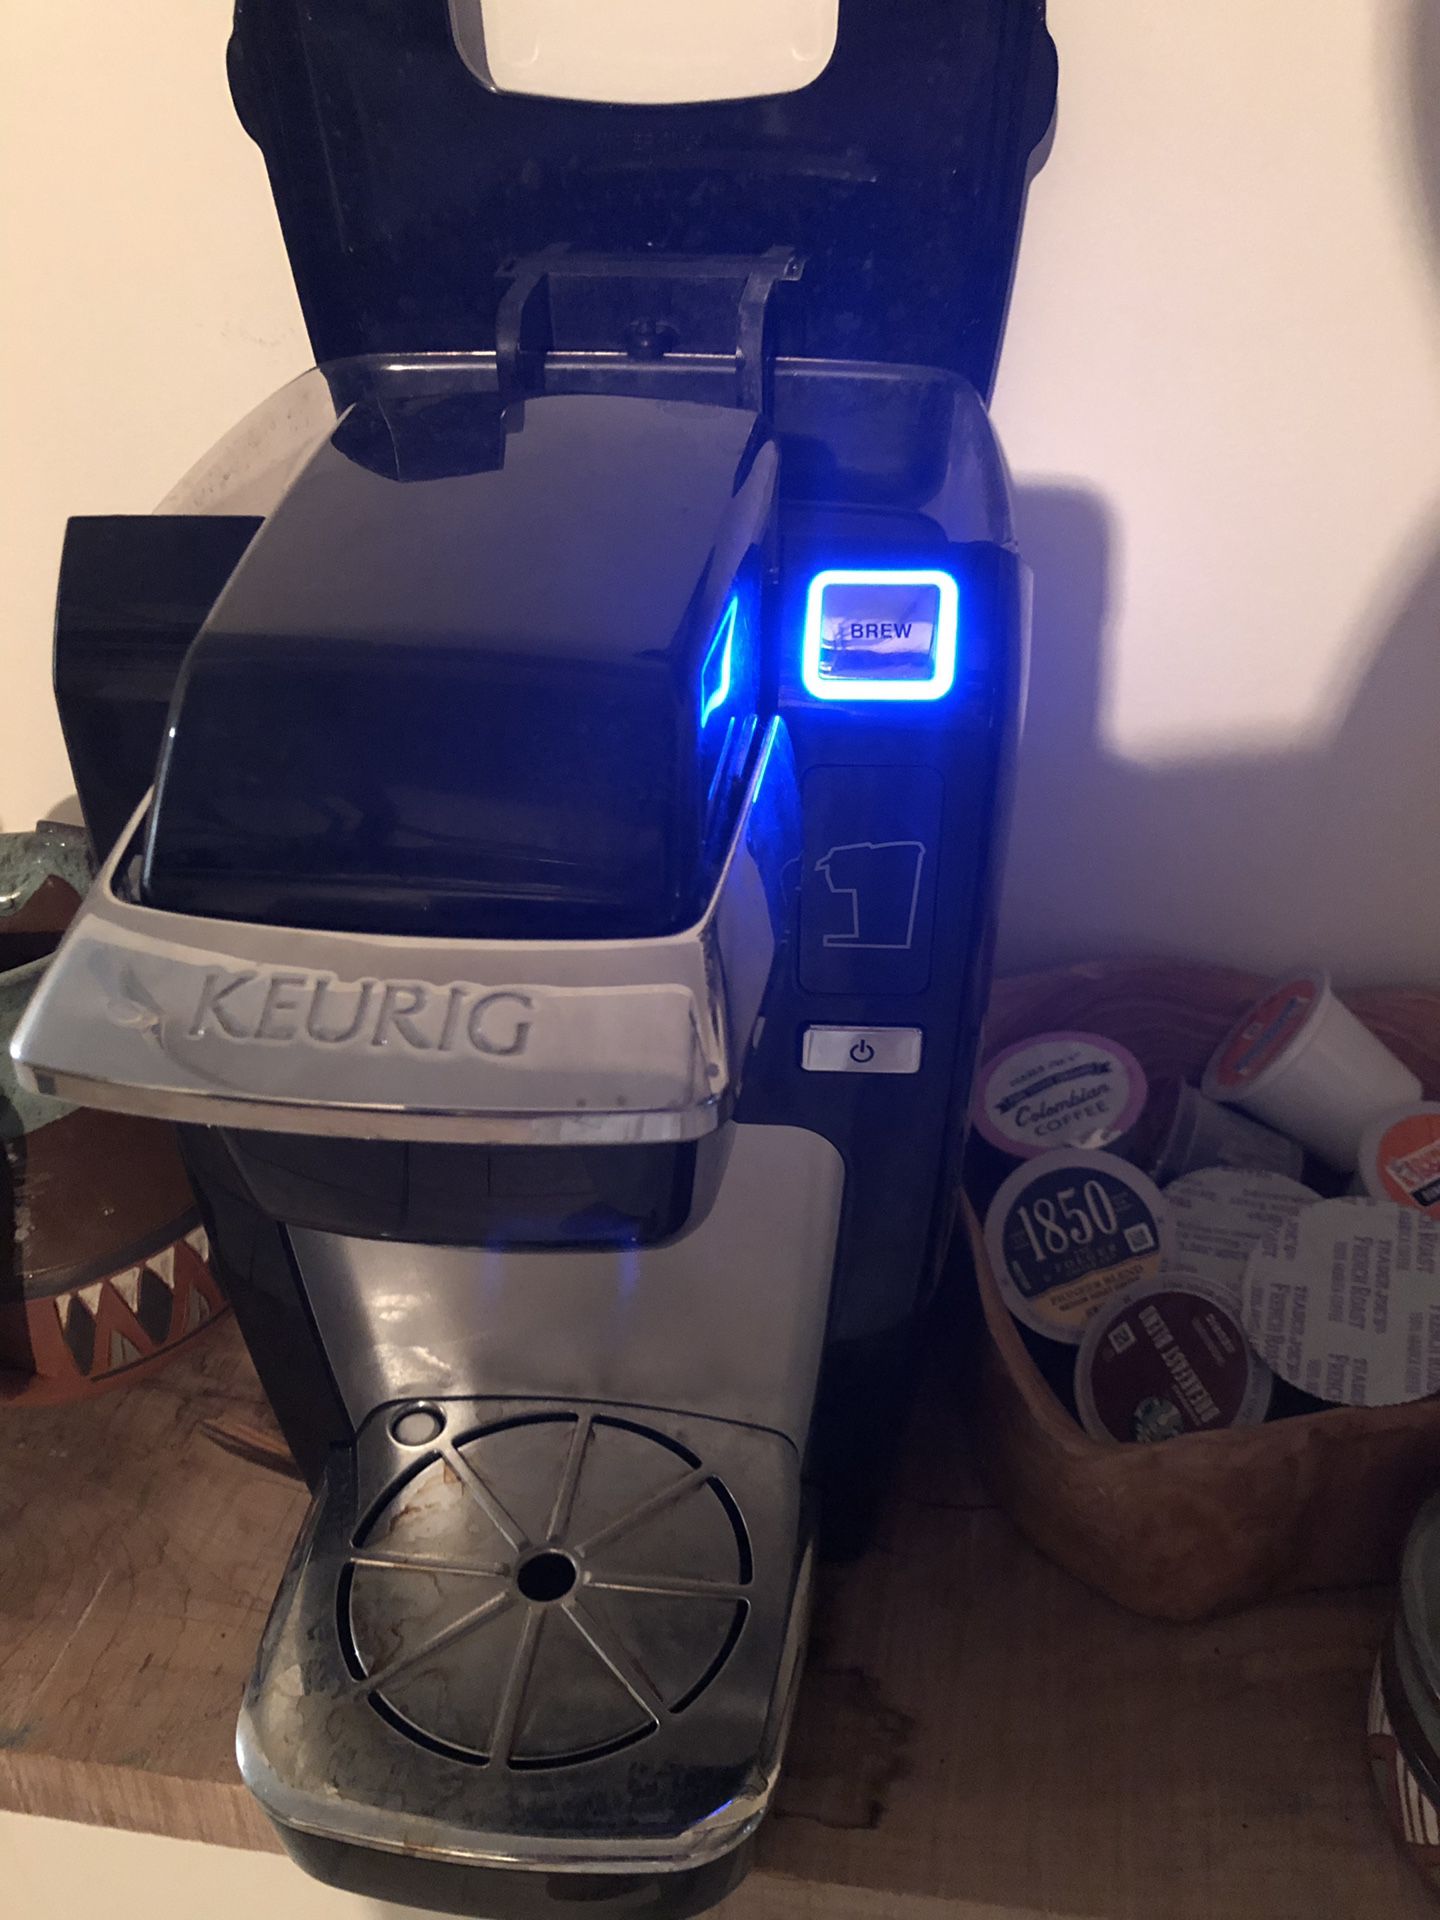 Keurig single-serve coffee maker (k15 model)